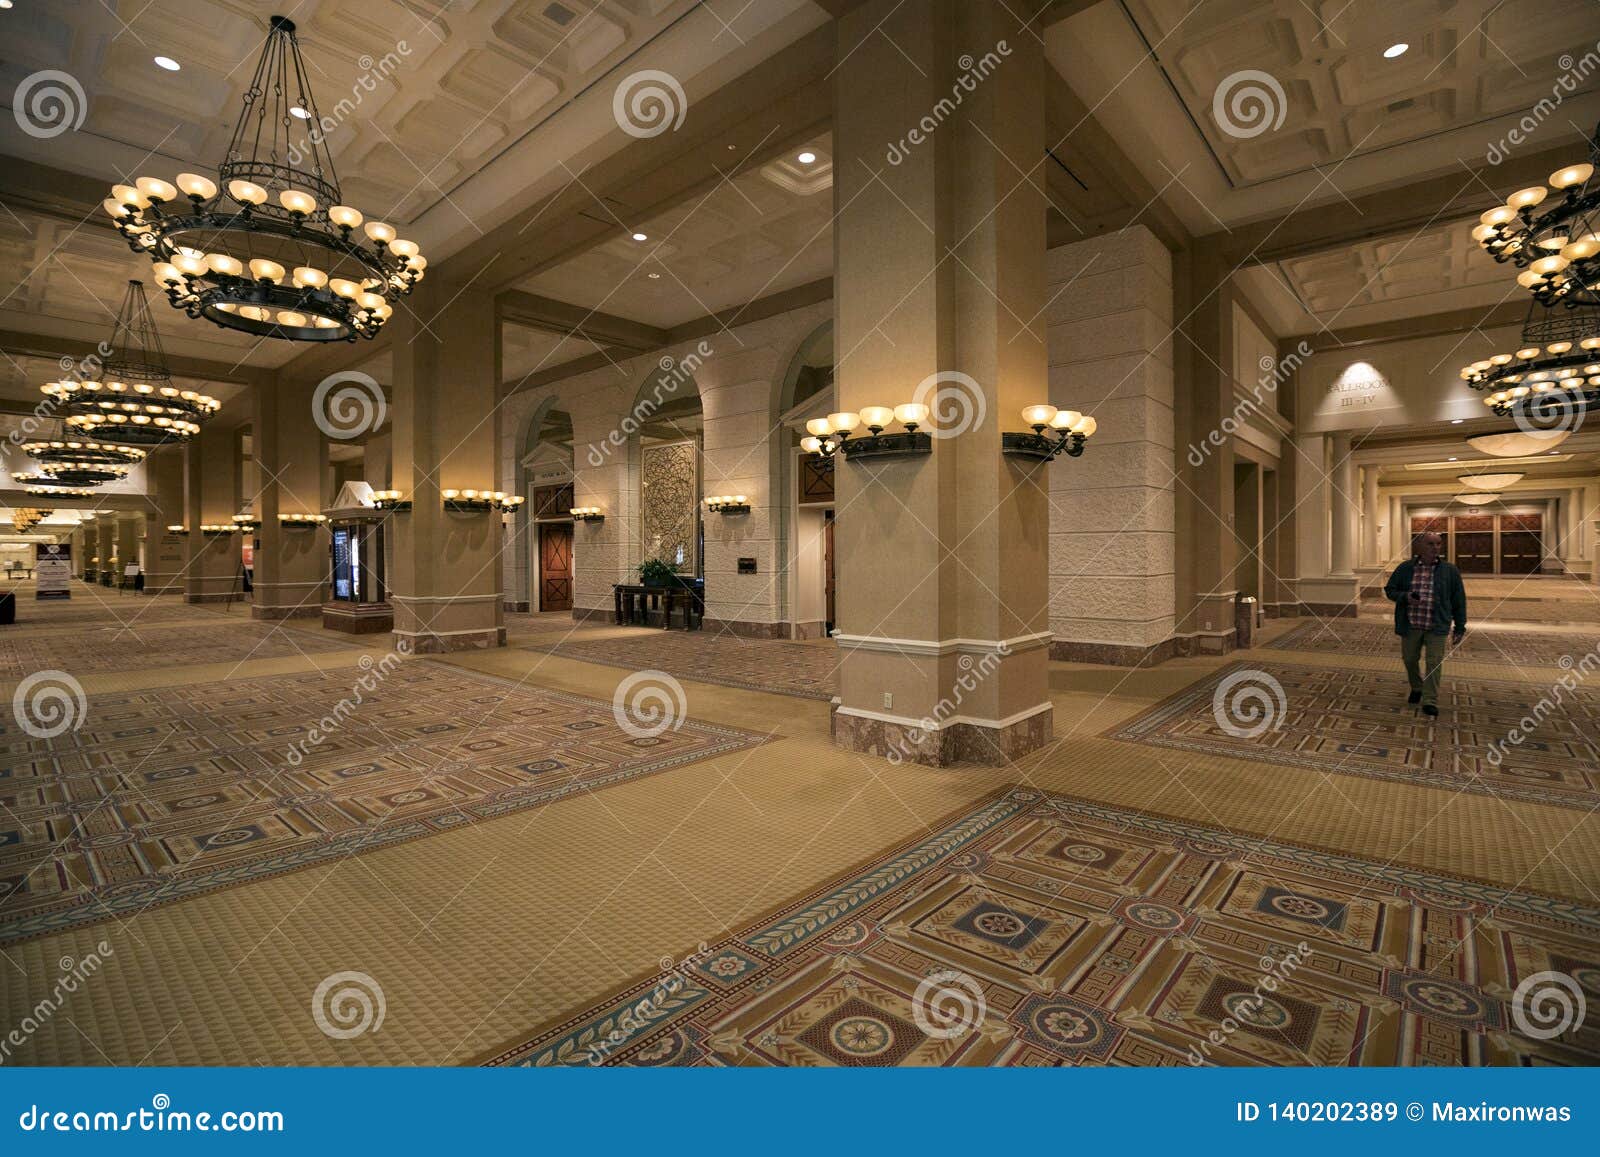 Usa Las Vegas The Caesars Palace Hotel Editorial Stock